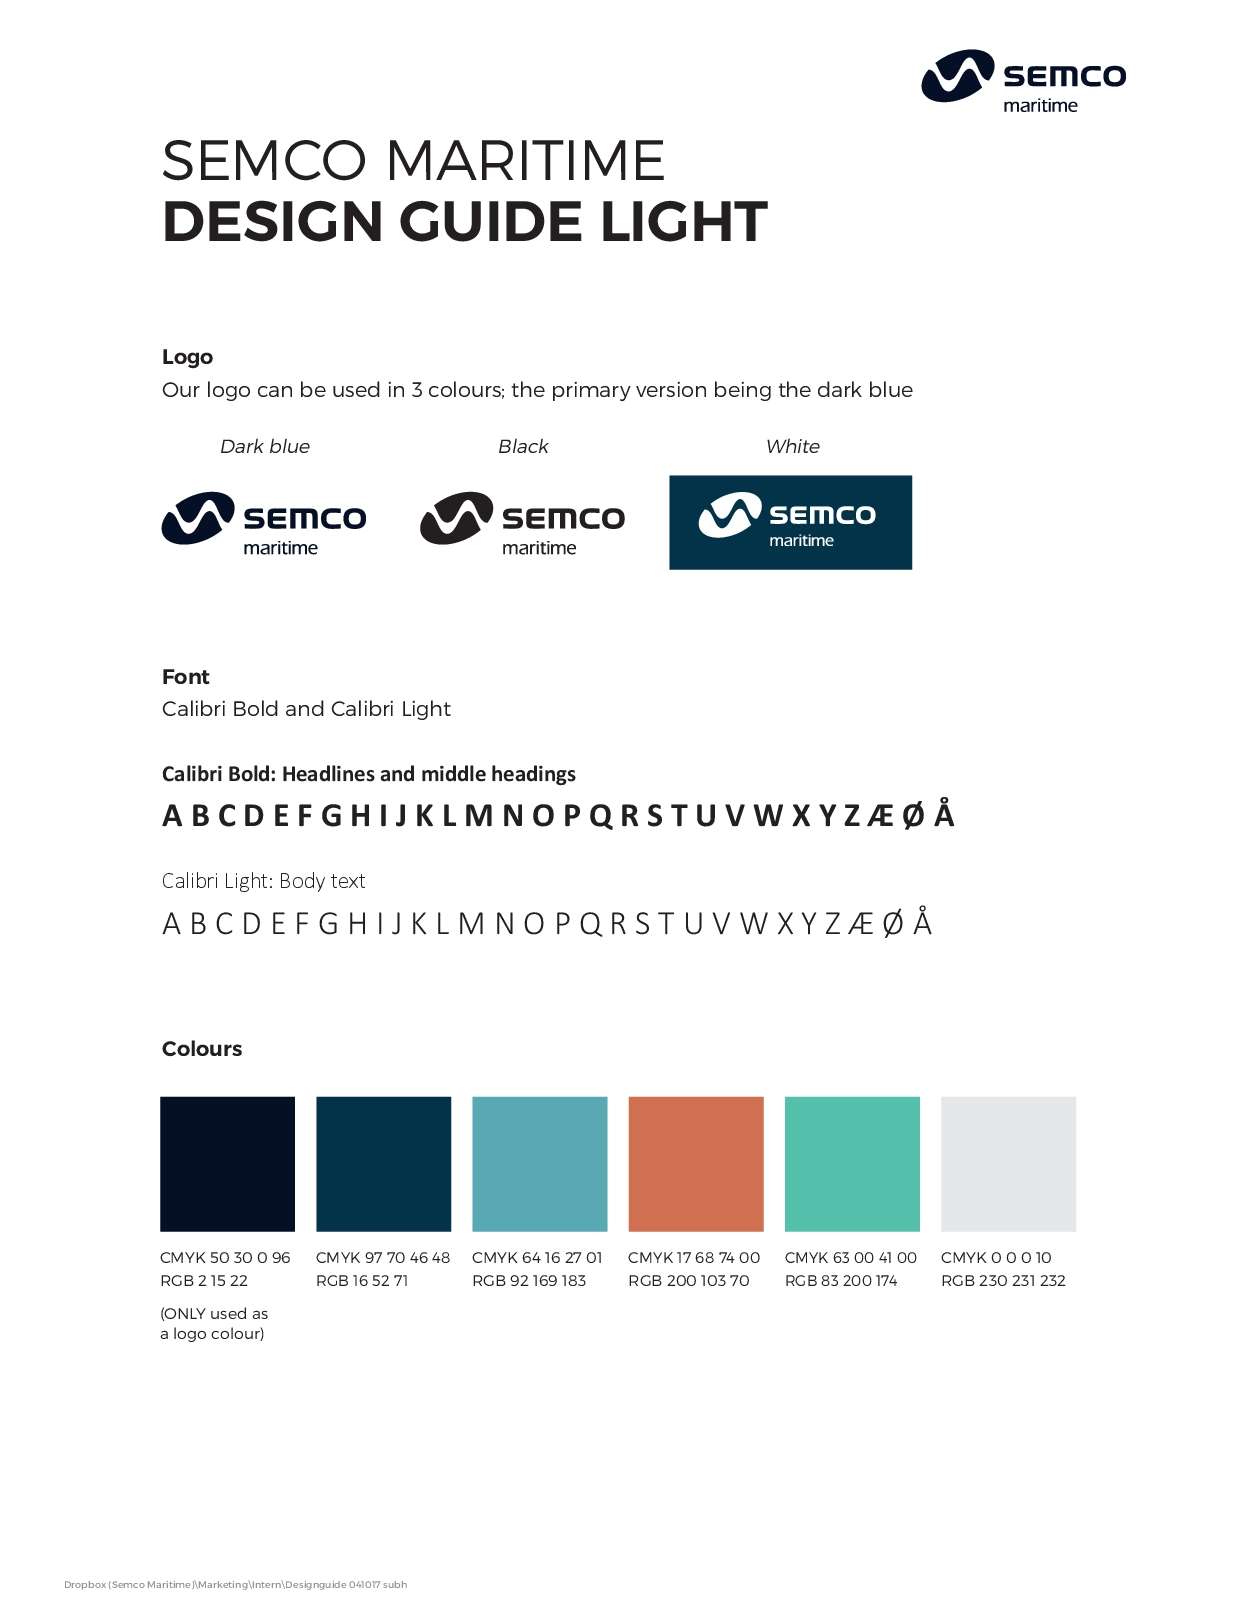 Design guide light